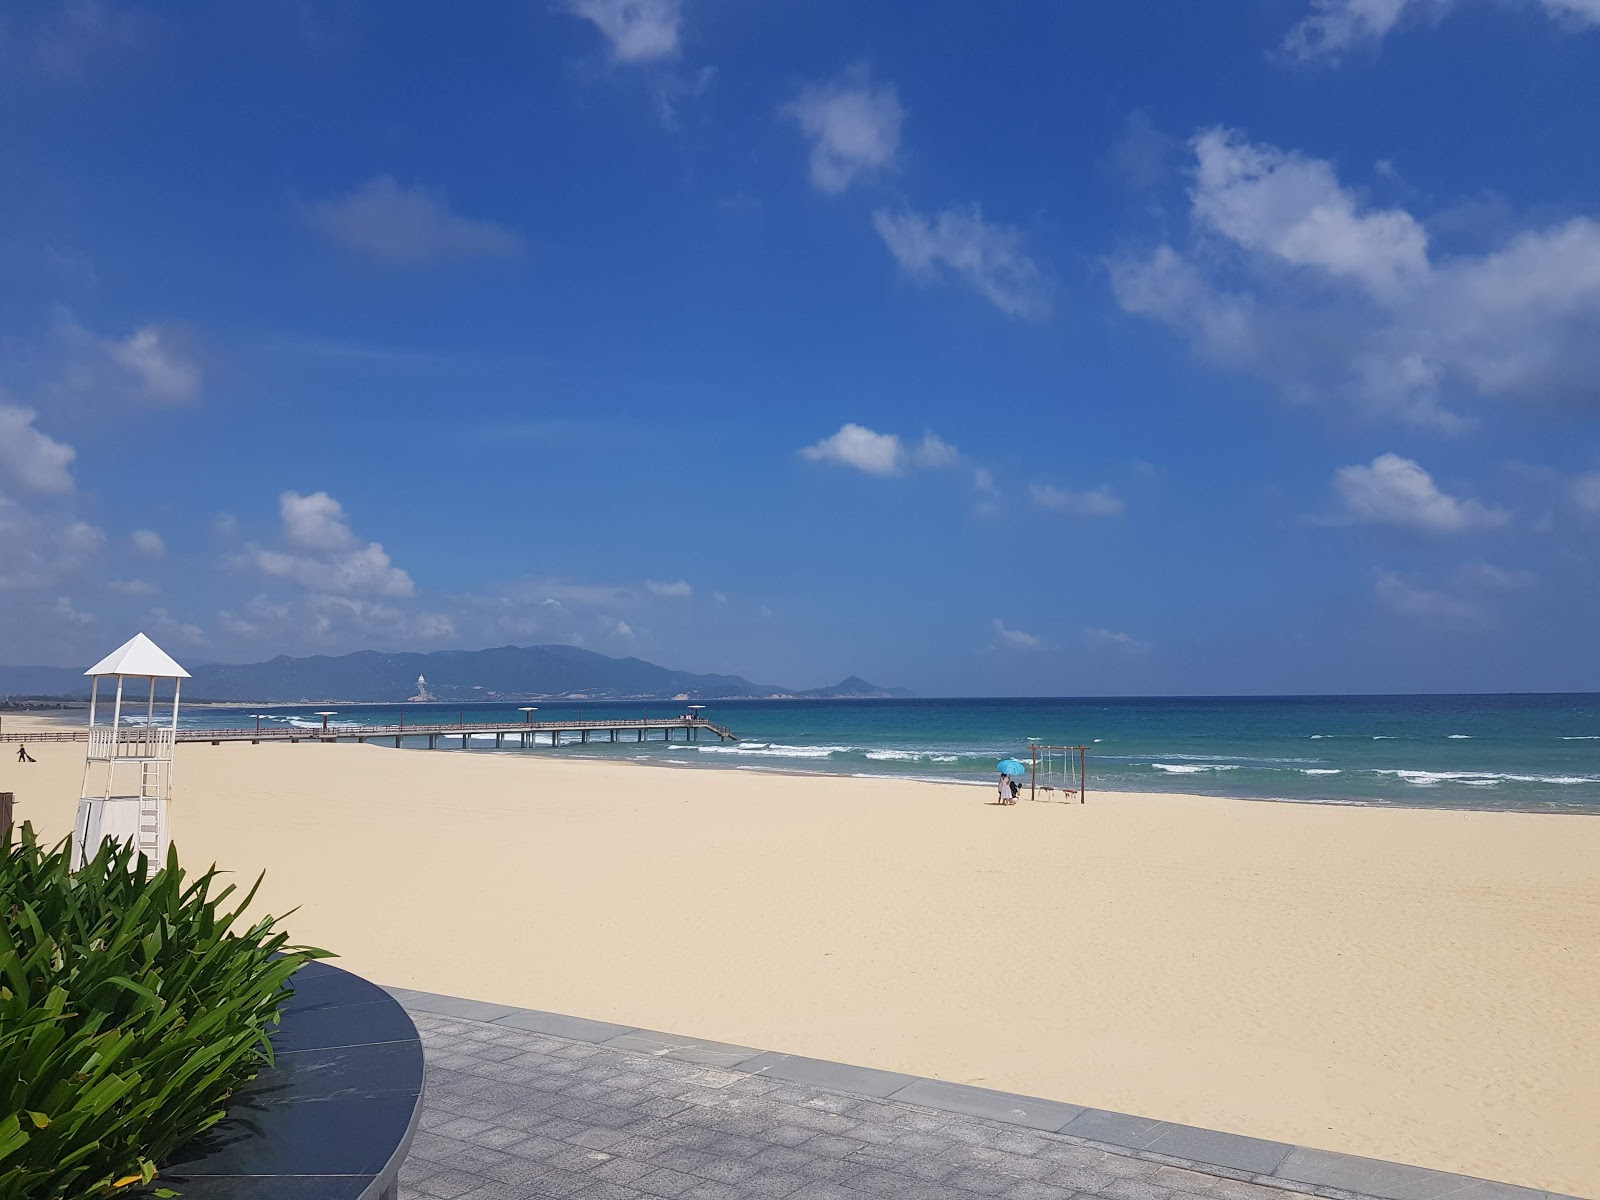 Hung Luong Beach'in fotoğrafı imkanlar alanı